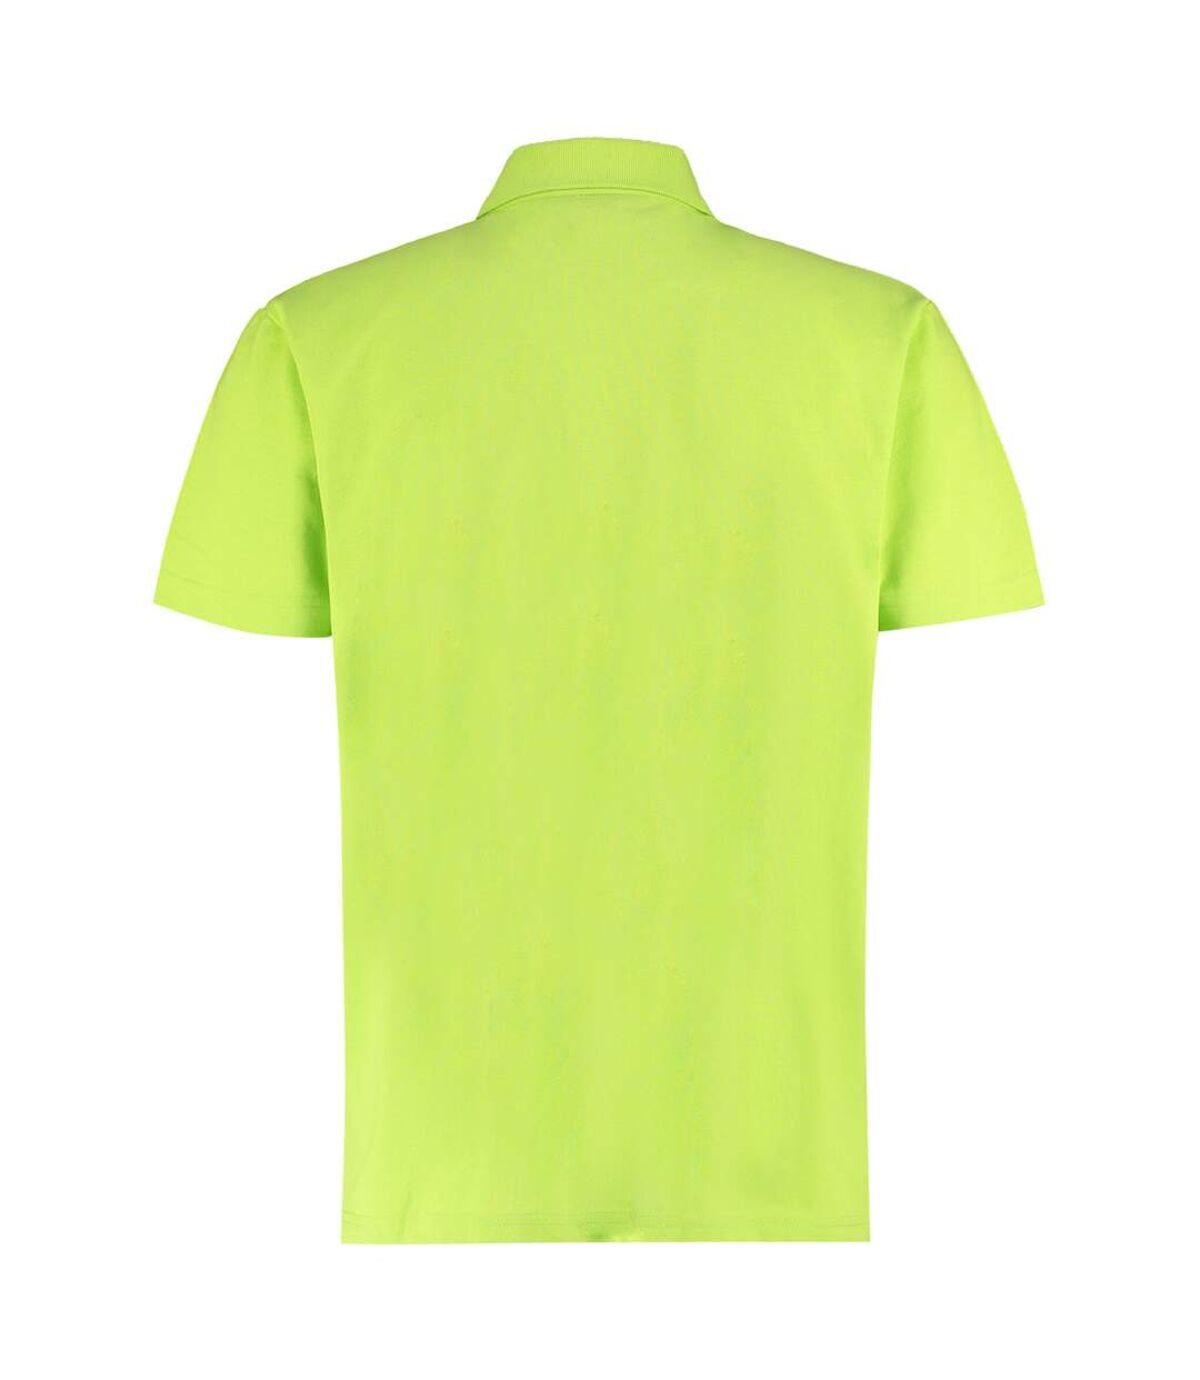 Kustom Kit - T-shirt POLO - Hommes (Vert citron) - UTPC3392